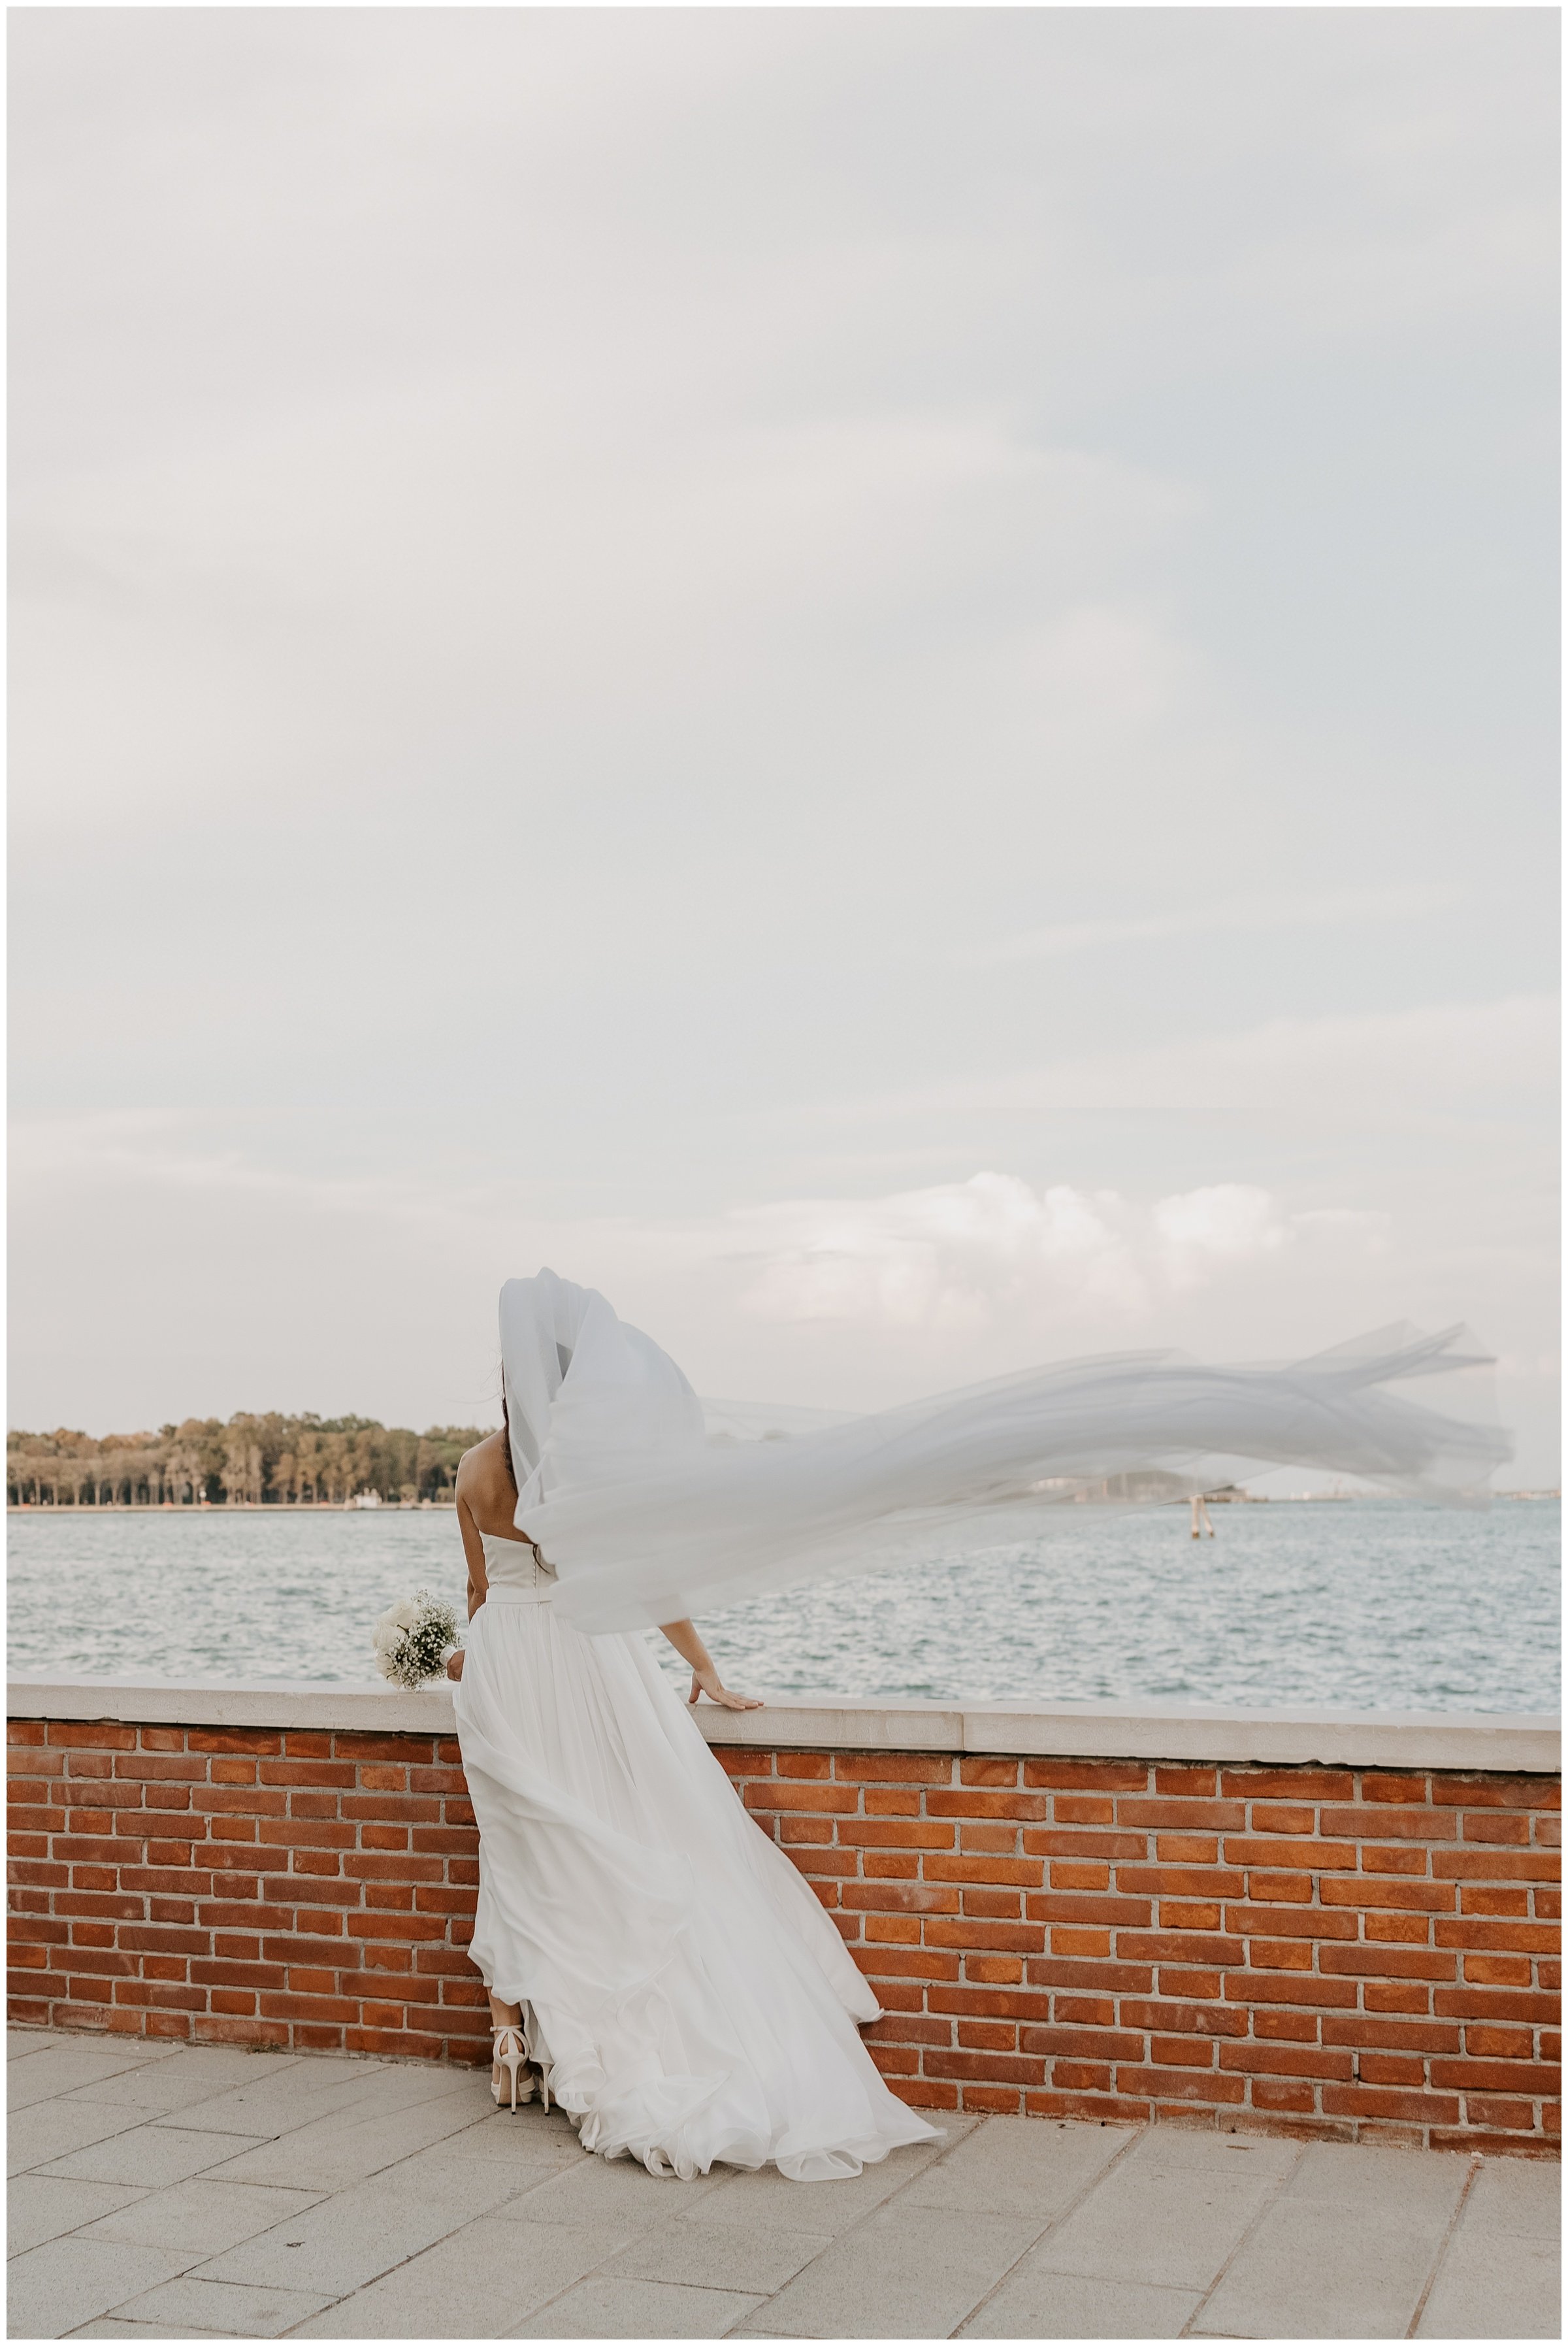 Matrimonio-san-servolo-fotografo-matrimonio-treviso-fotografo-matrimonio-venezia_0131.jpg